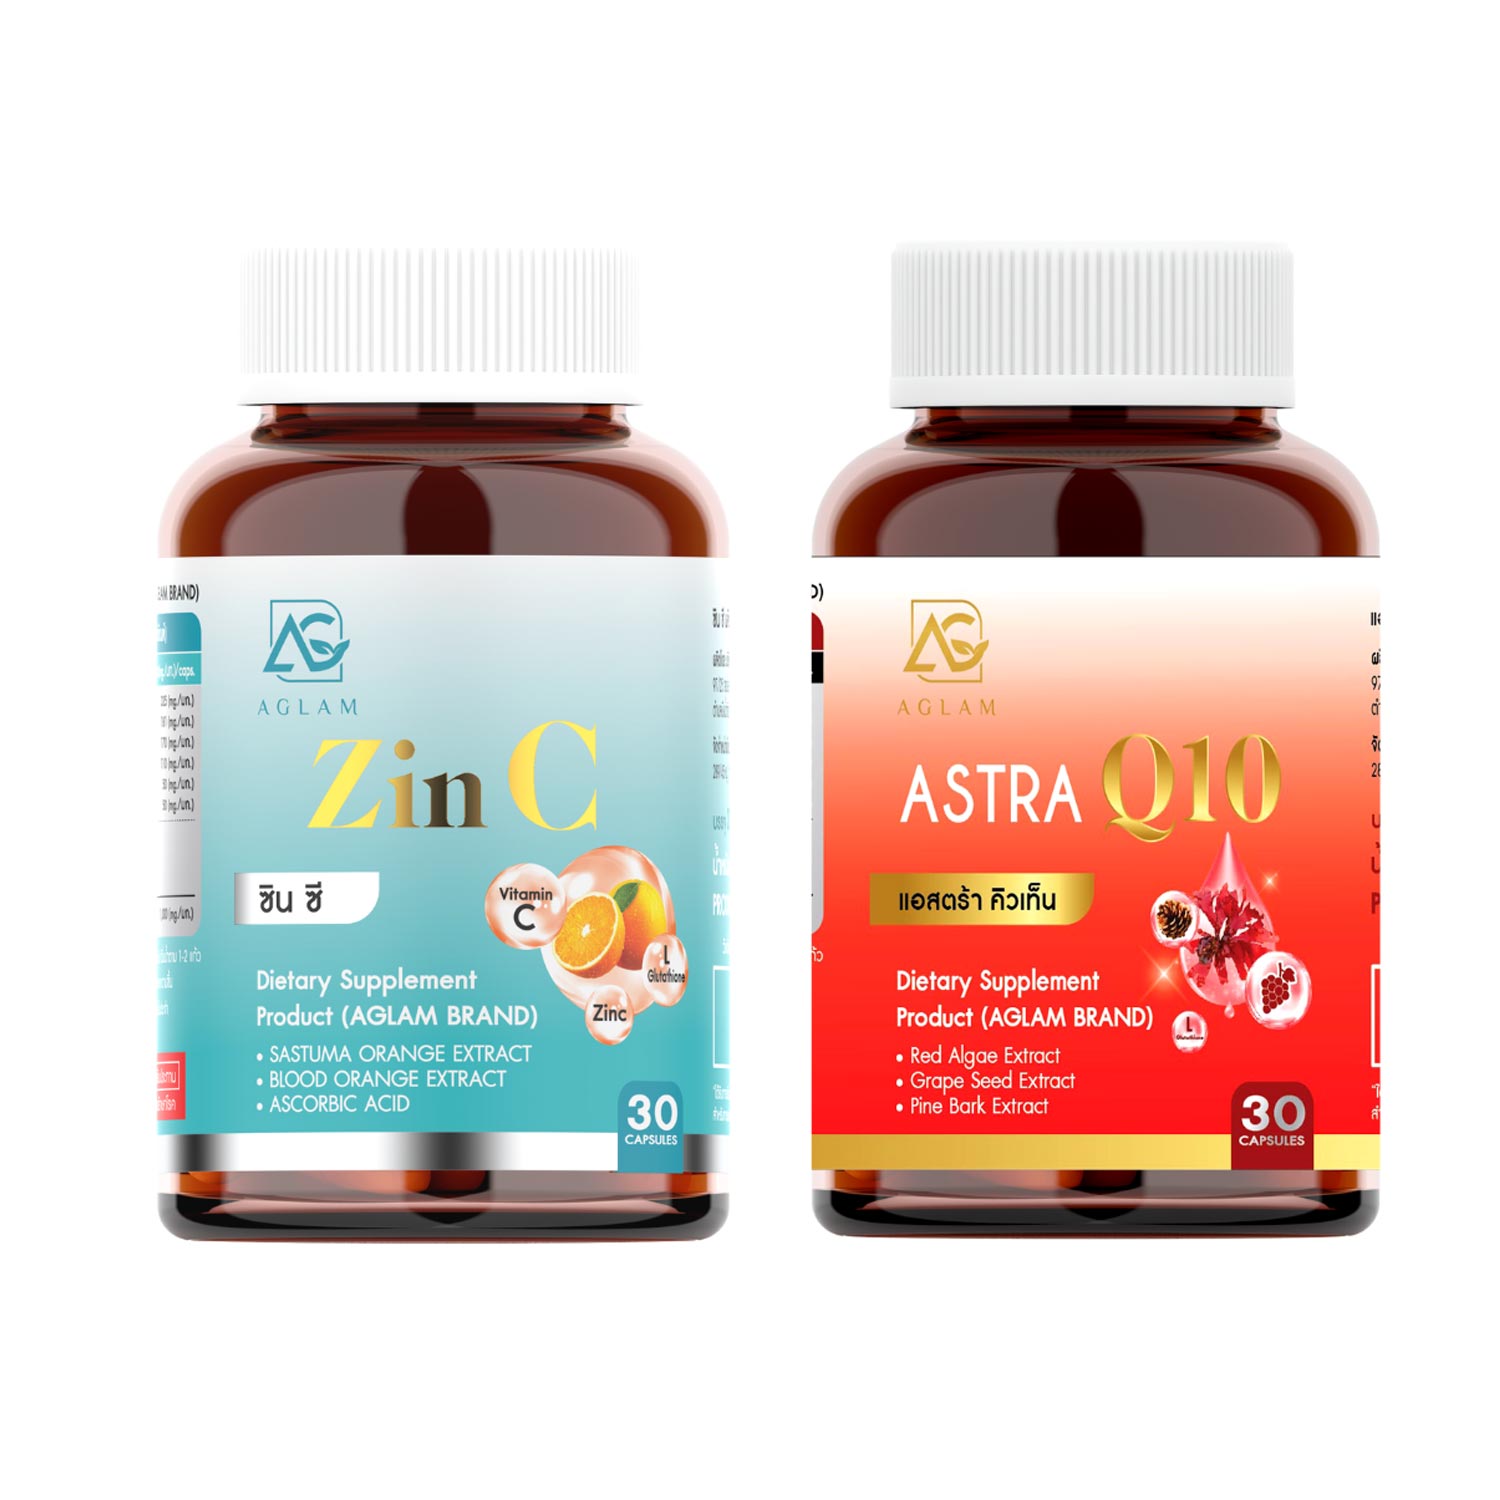 Пищевая добавка Aglam Zinc & Astra Q10, 2 банки по 30 капсул